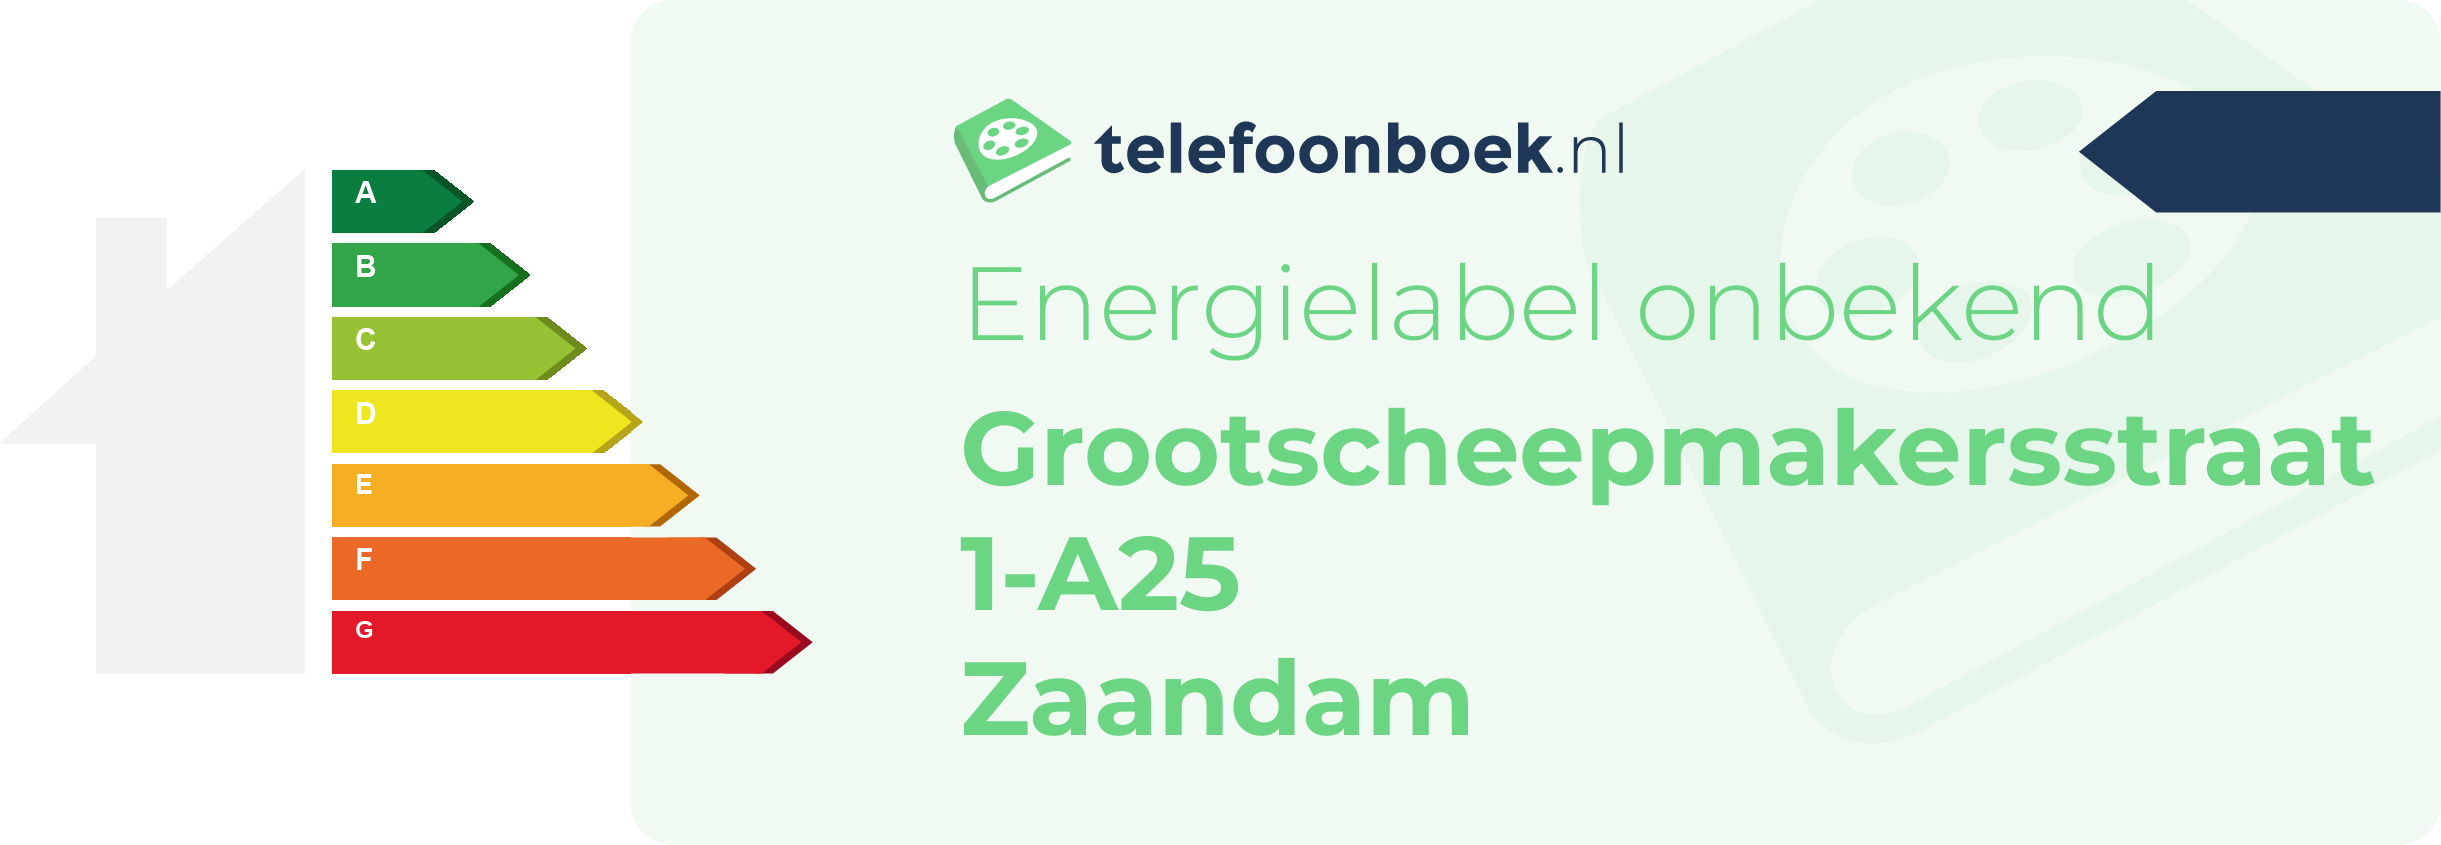 Energielabel Grootscheepmakersstraat 1-A25 Zaandam